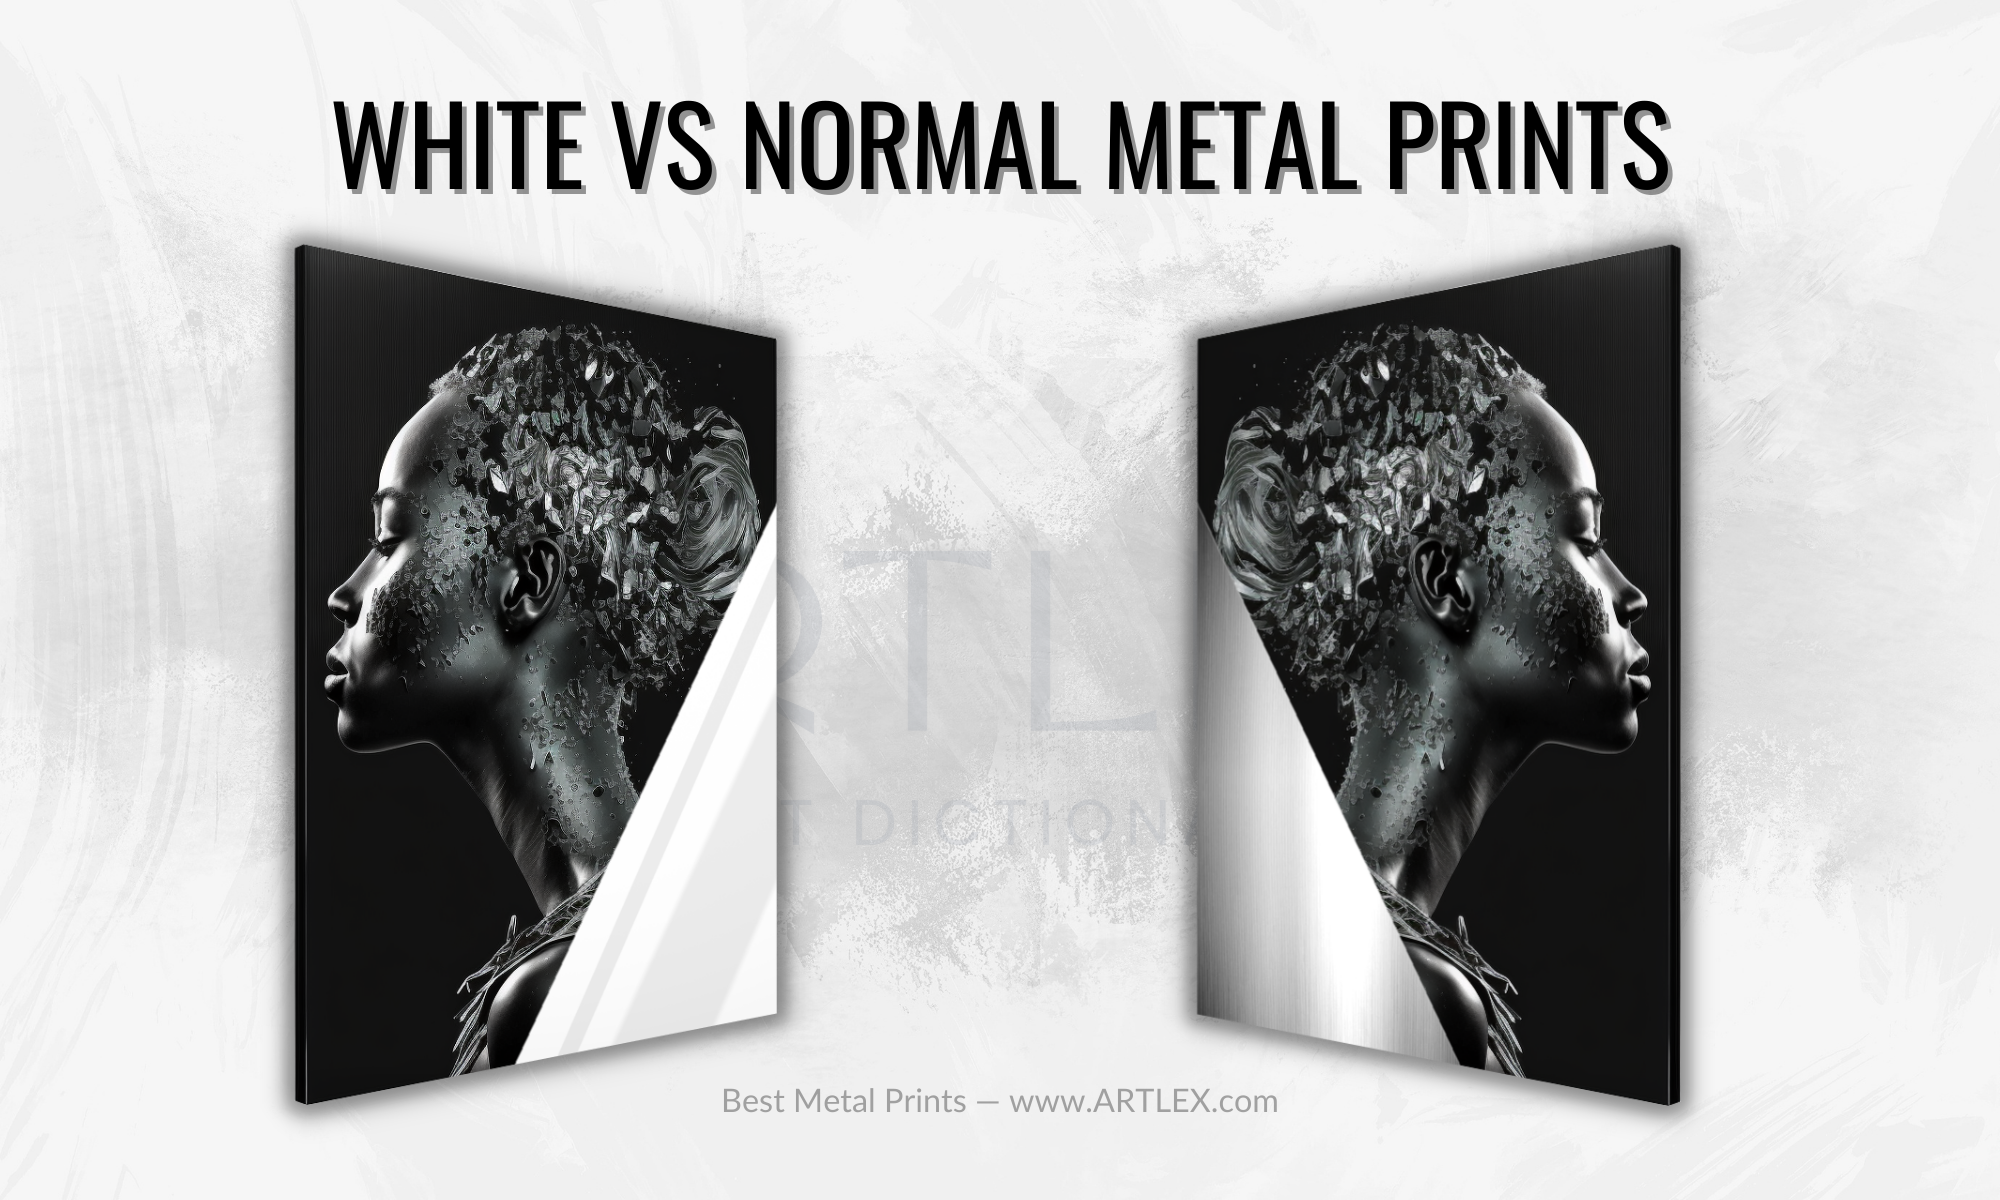 White vs Normal Metal Prints